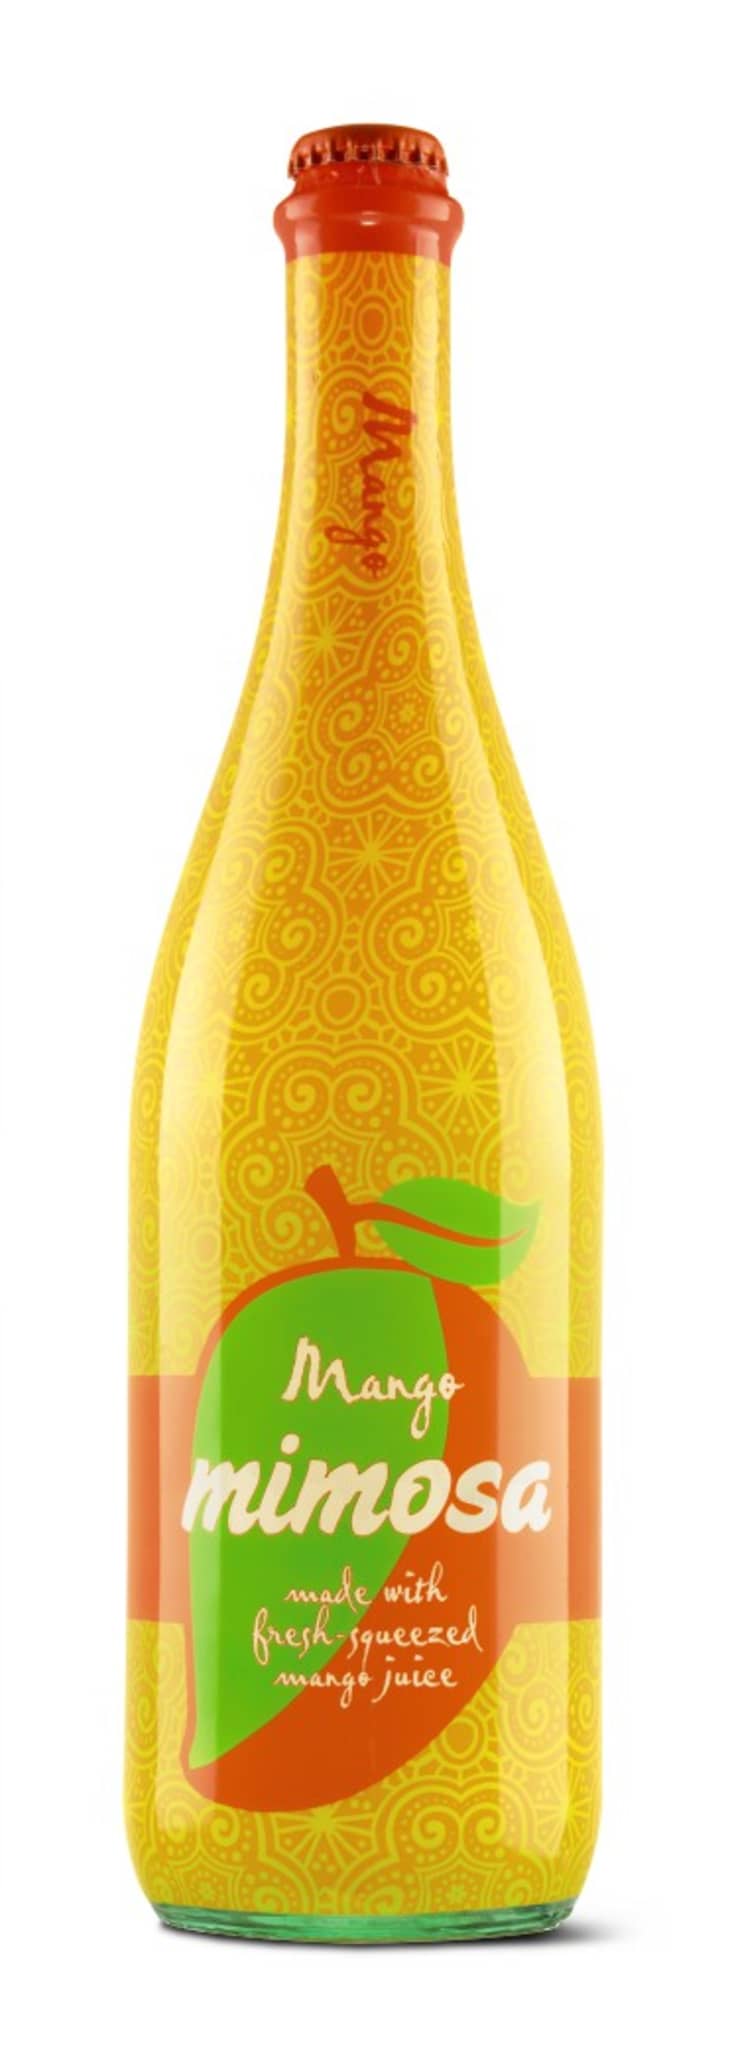 Mango Mimosa